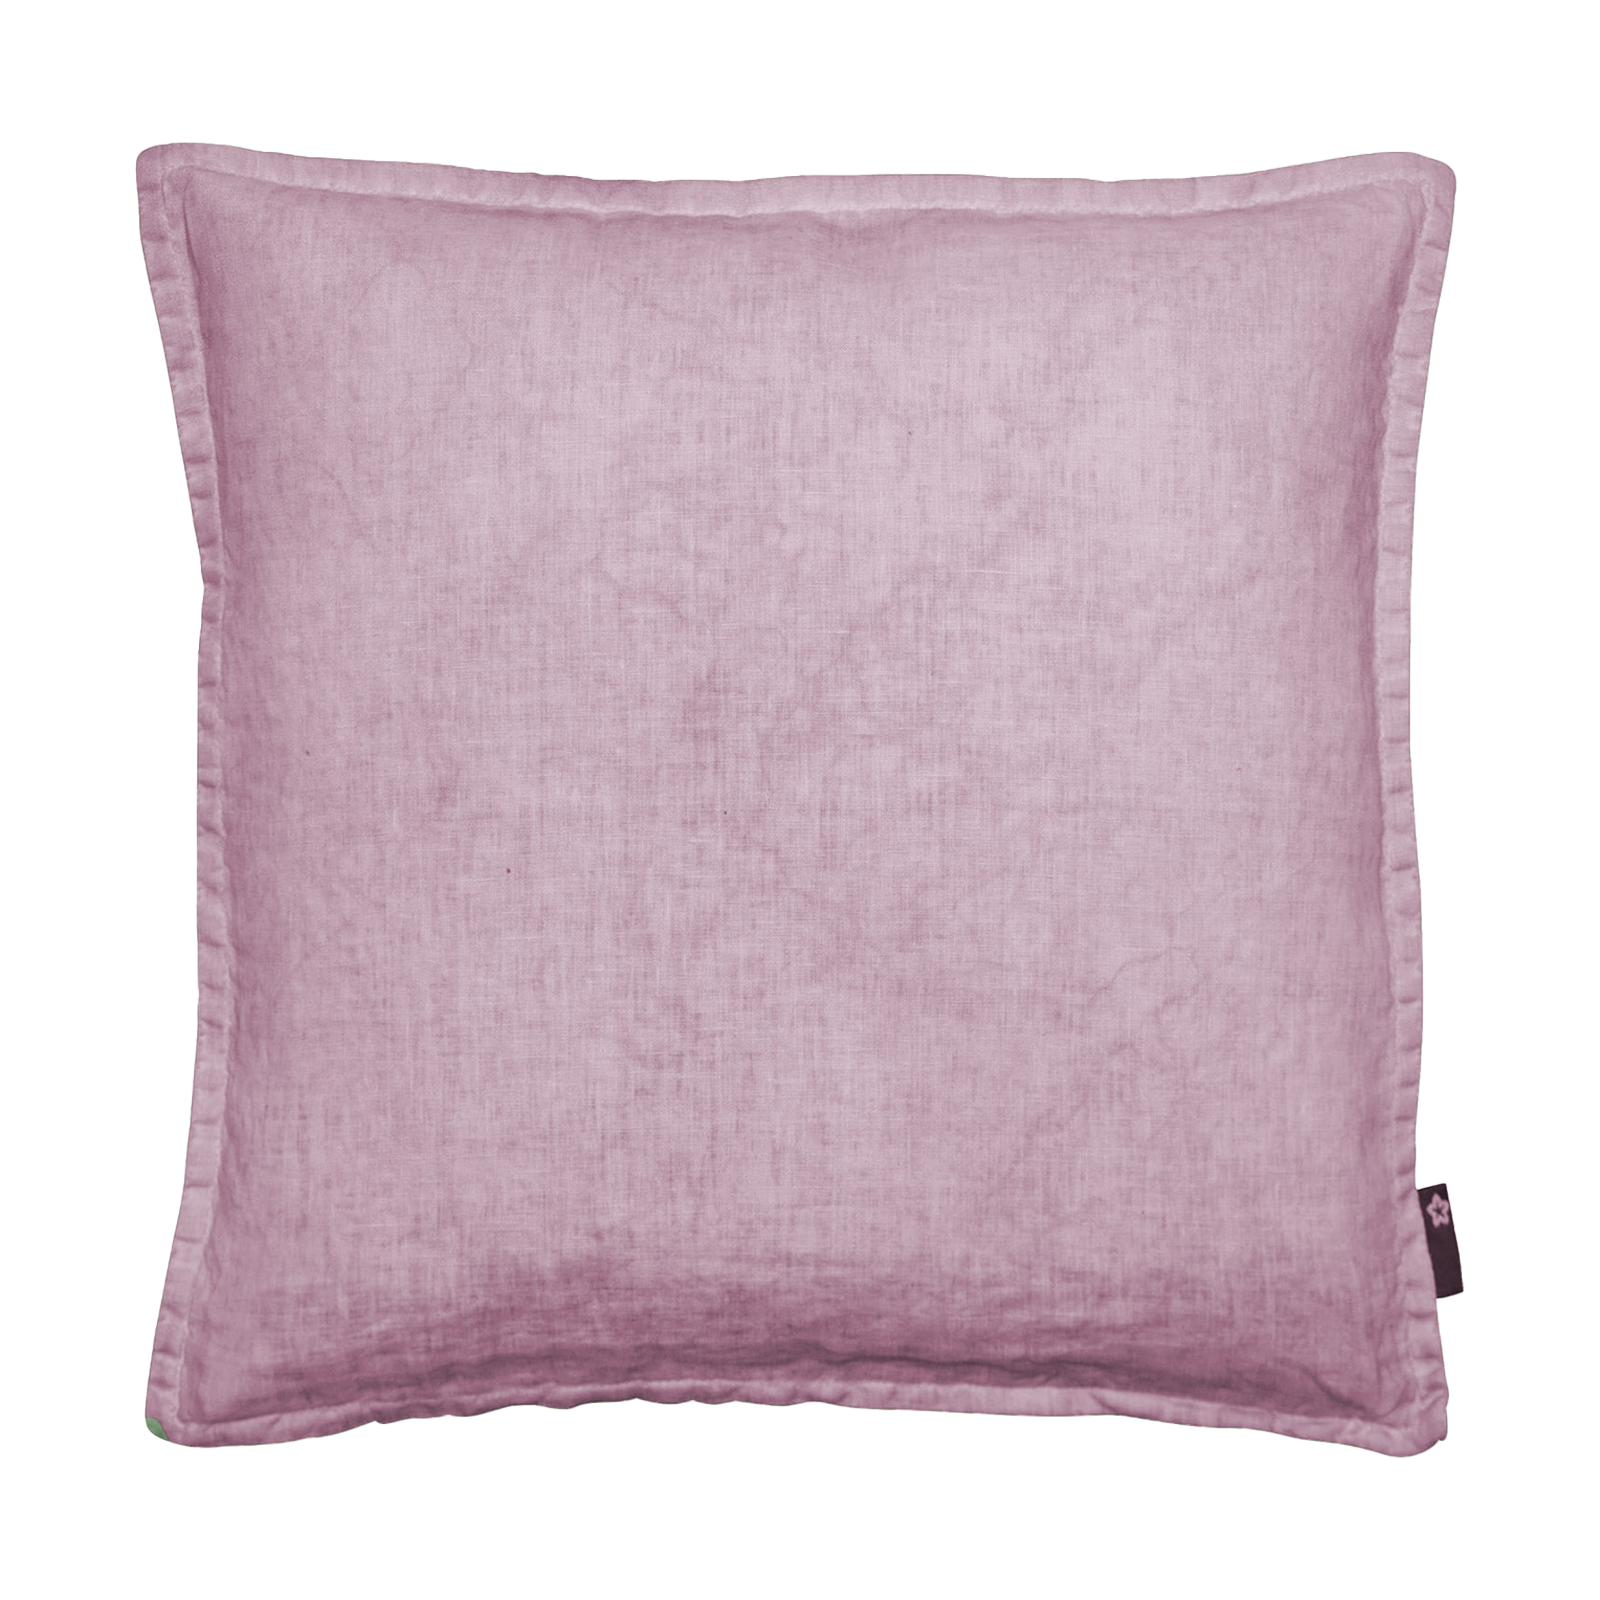 Größe: 41x 41 cm Farbe: lavendel #farbe_lavendel